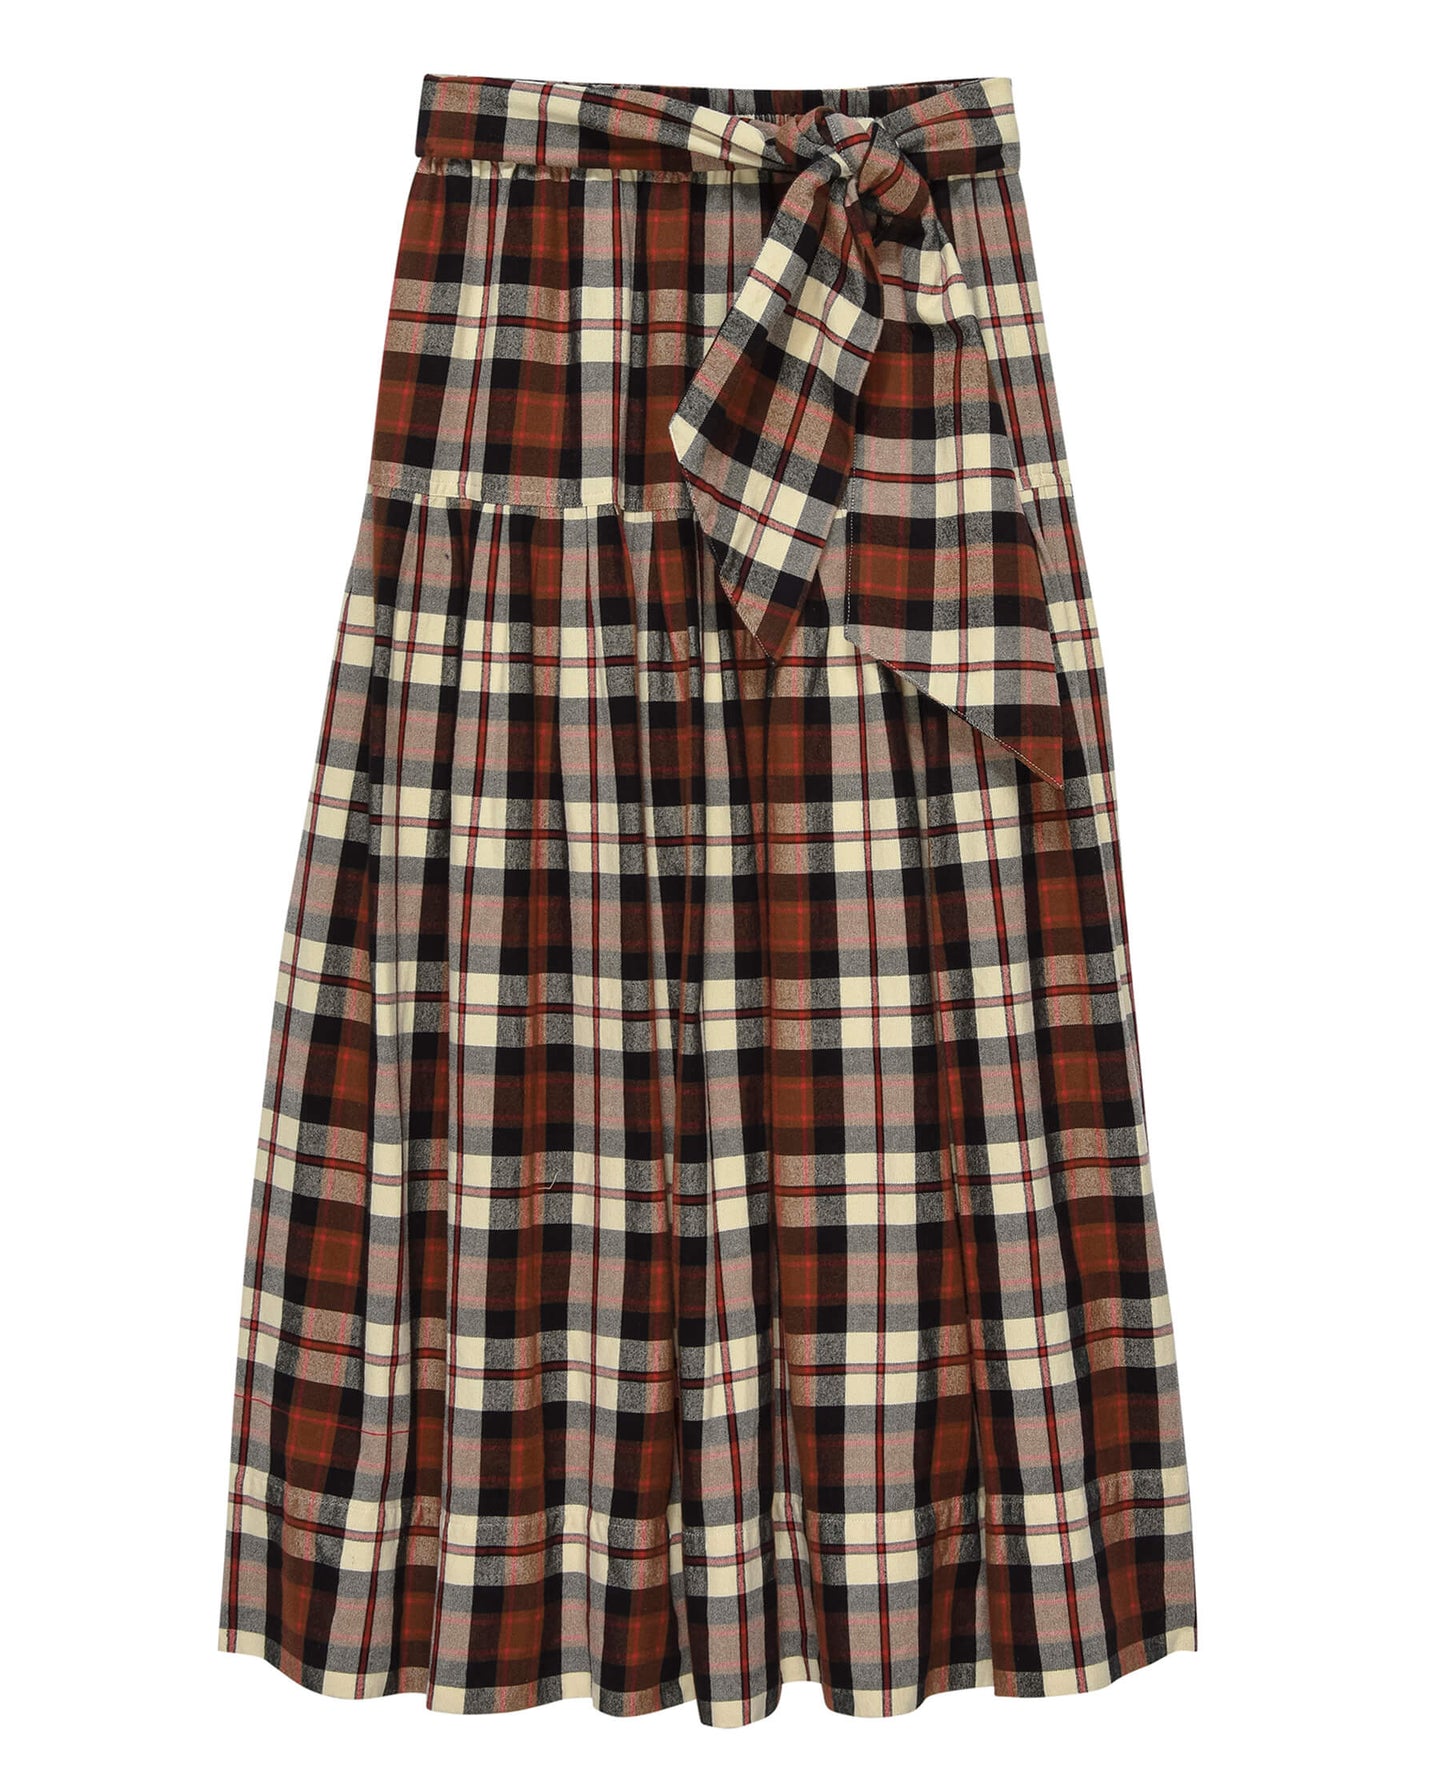 Skirt The Highland S Highland Skirt Mill-Plaid